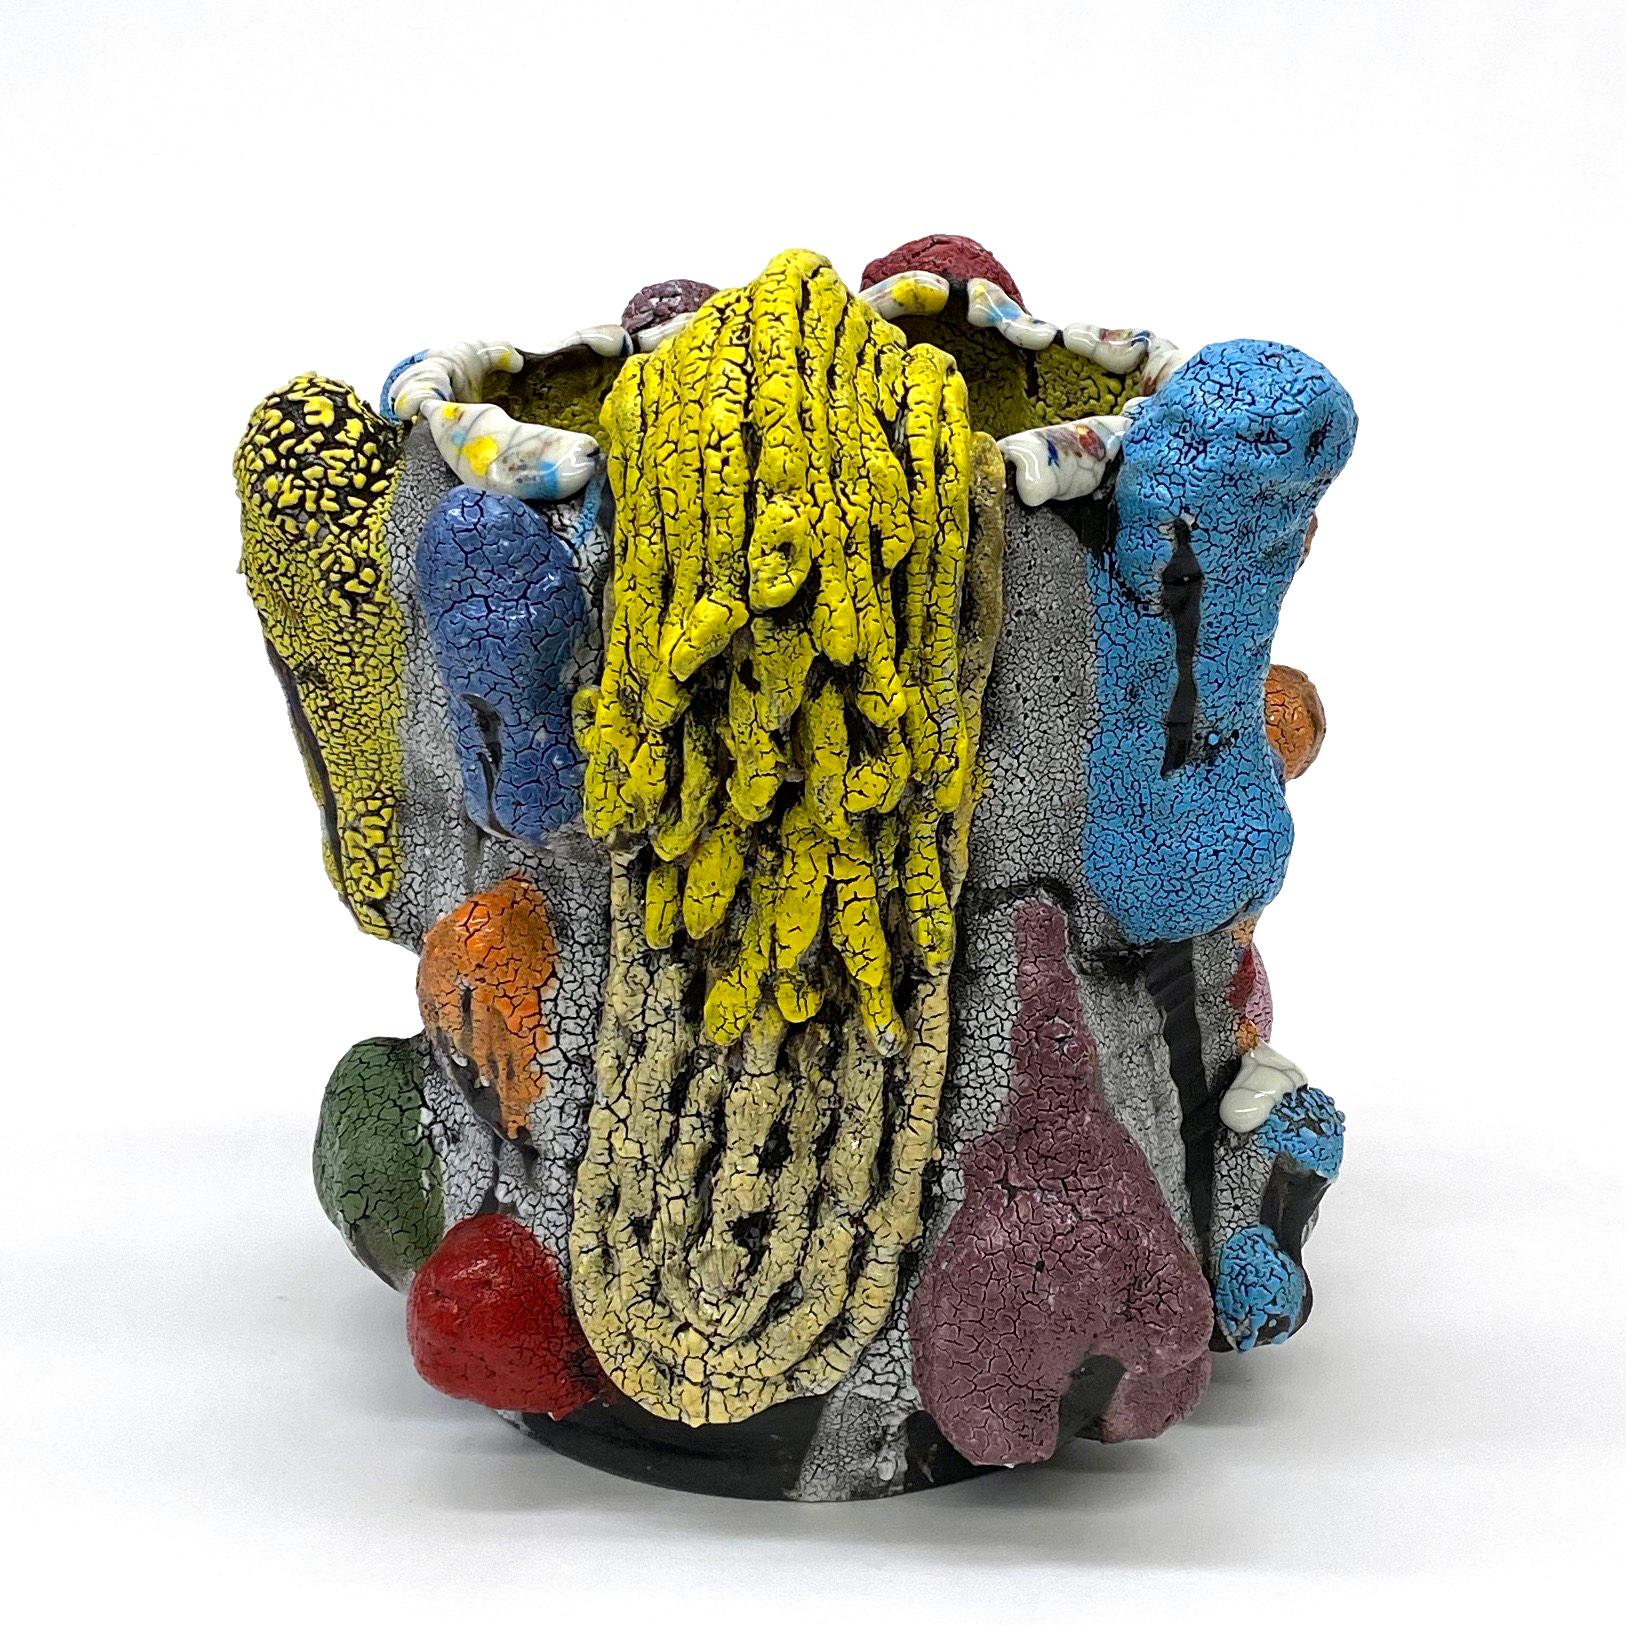 Abstract Sculpture Vince Palacios - « Pomme de pommes avec vignes jaunes », contemporain, abstrait, céramique, sculpture